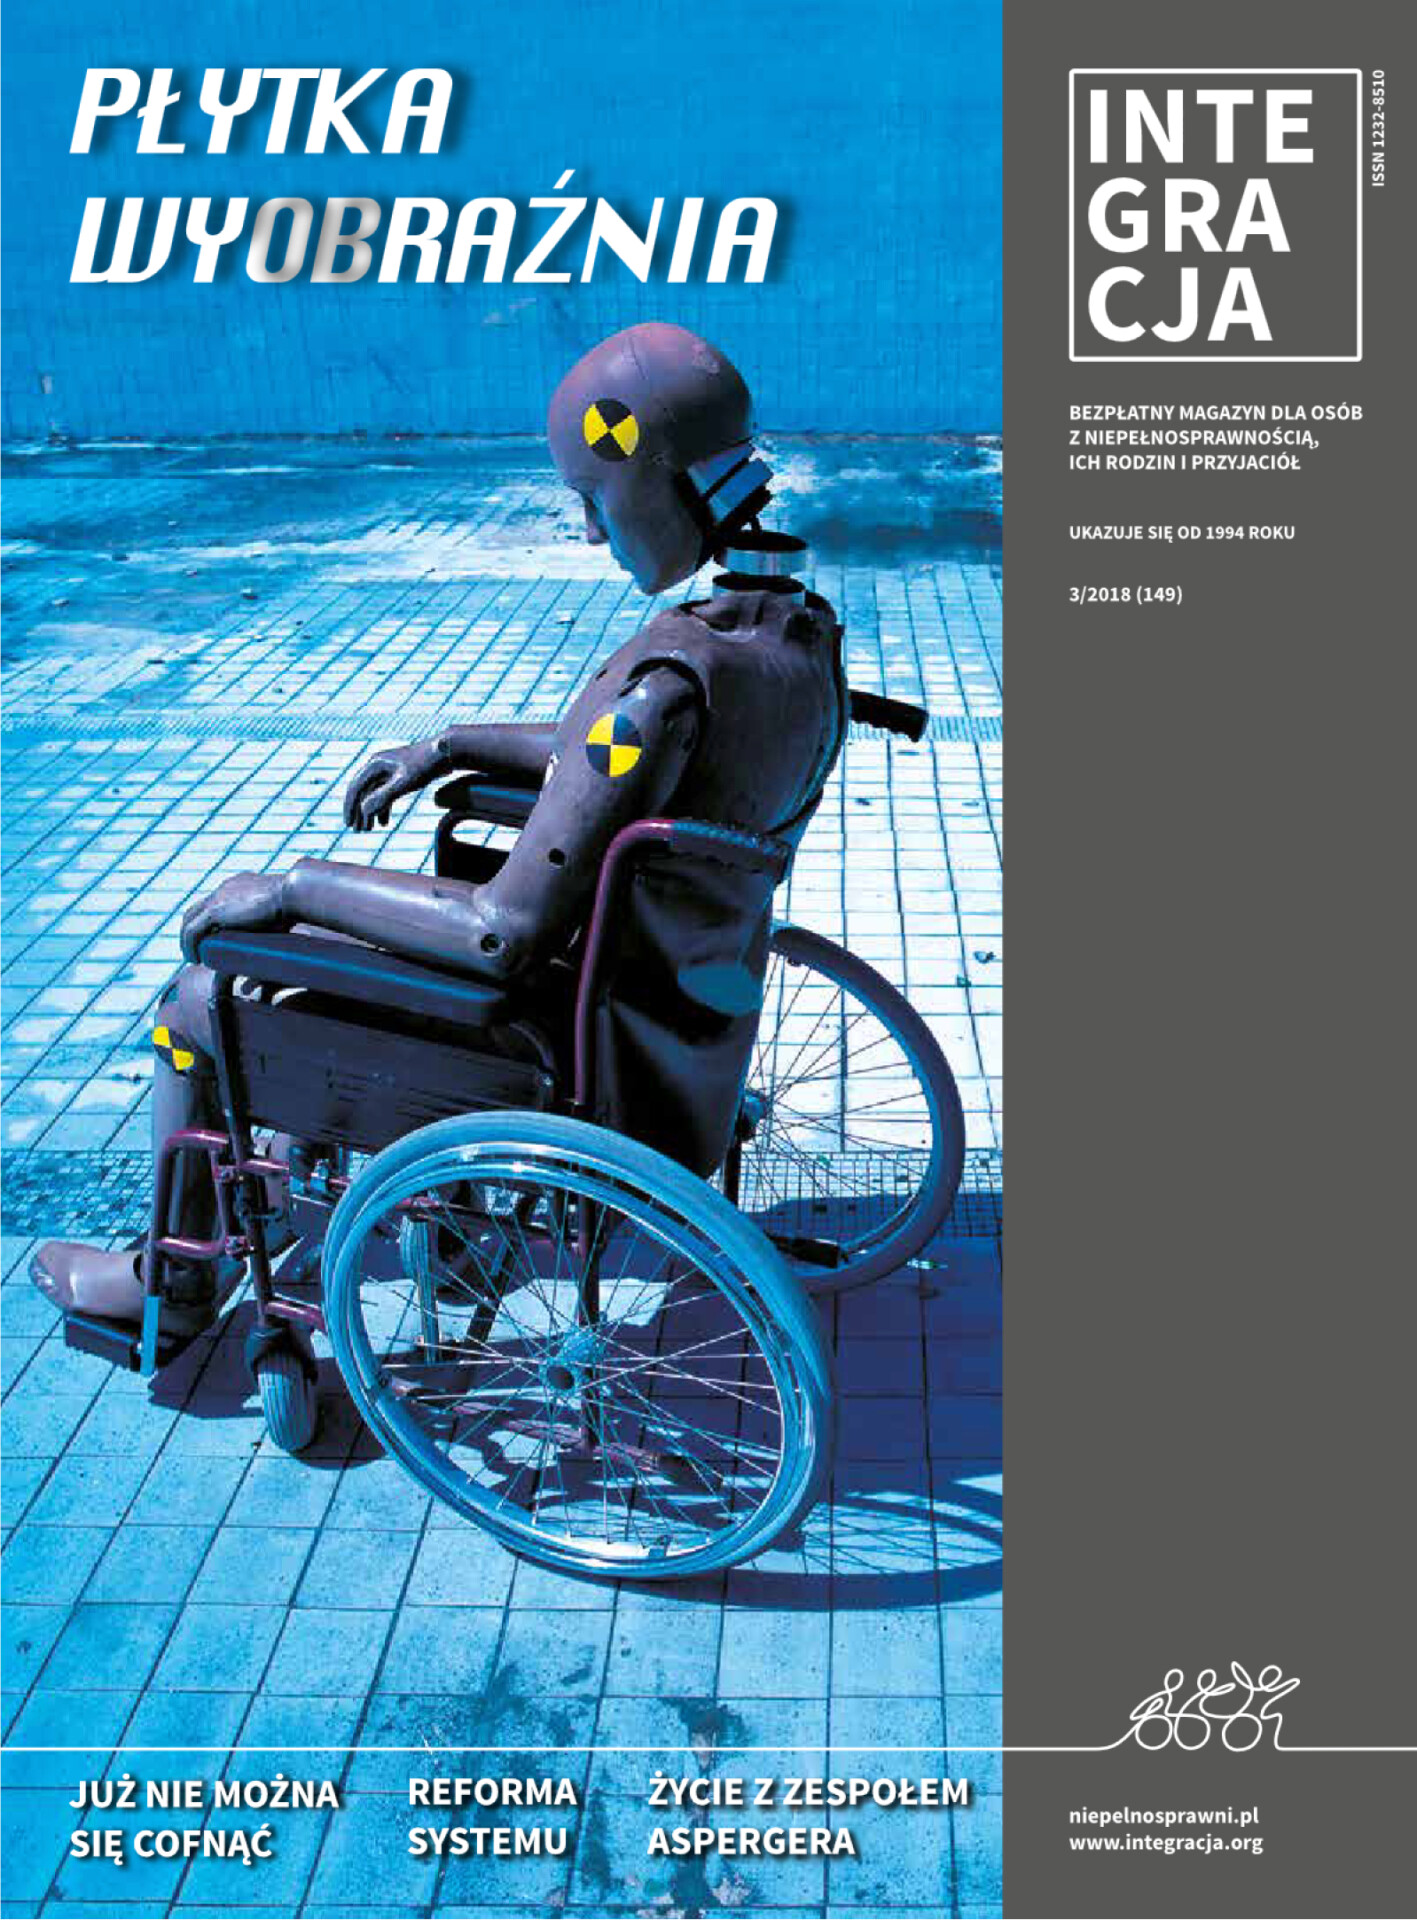 Okładka magazynu Integracja 3/2018. Plakat z kampanii "Płytka wyobraźnia". Na tle basenu manekin na wózku inwalidzkim w stylistyce crash testu. Kliknięcie przekierowuje do całego magazynu w PDF-ie dostępnym.